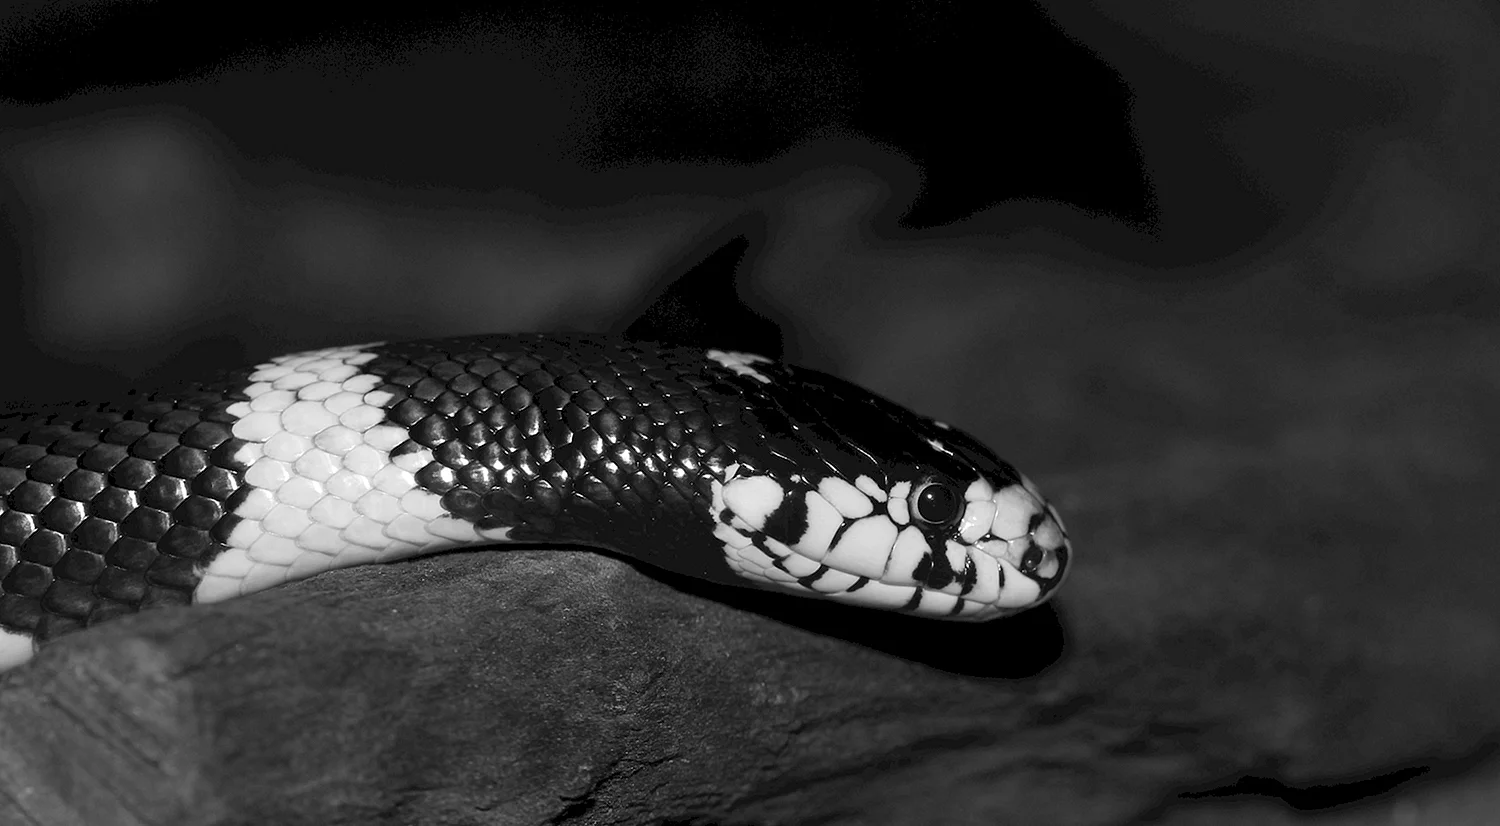 Черная змея с белым брюхом